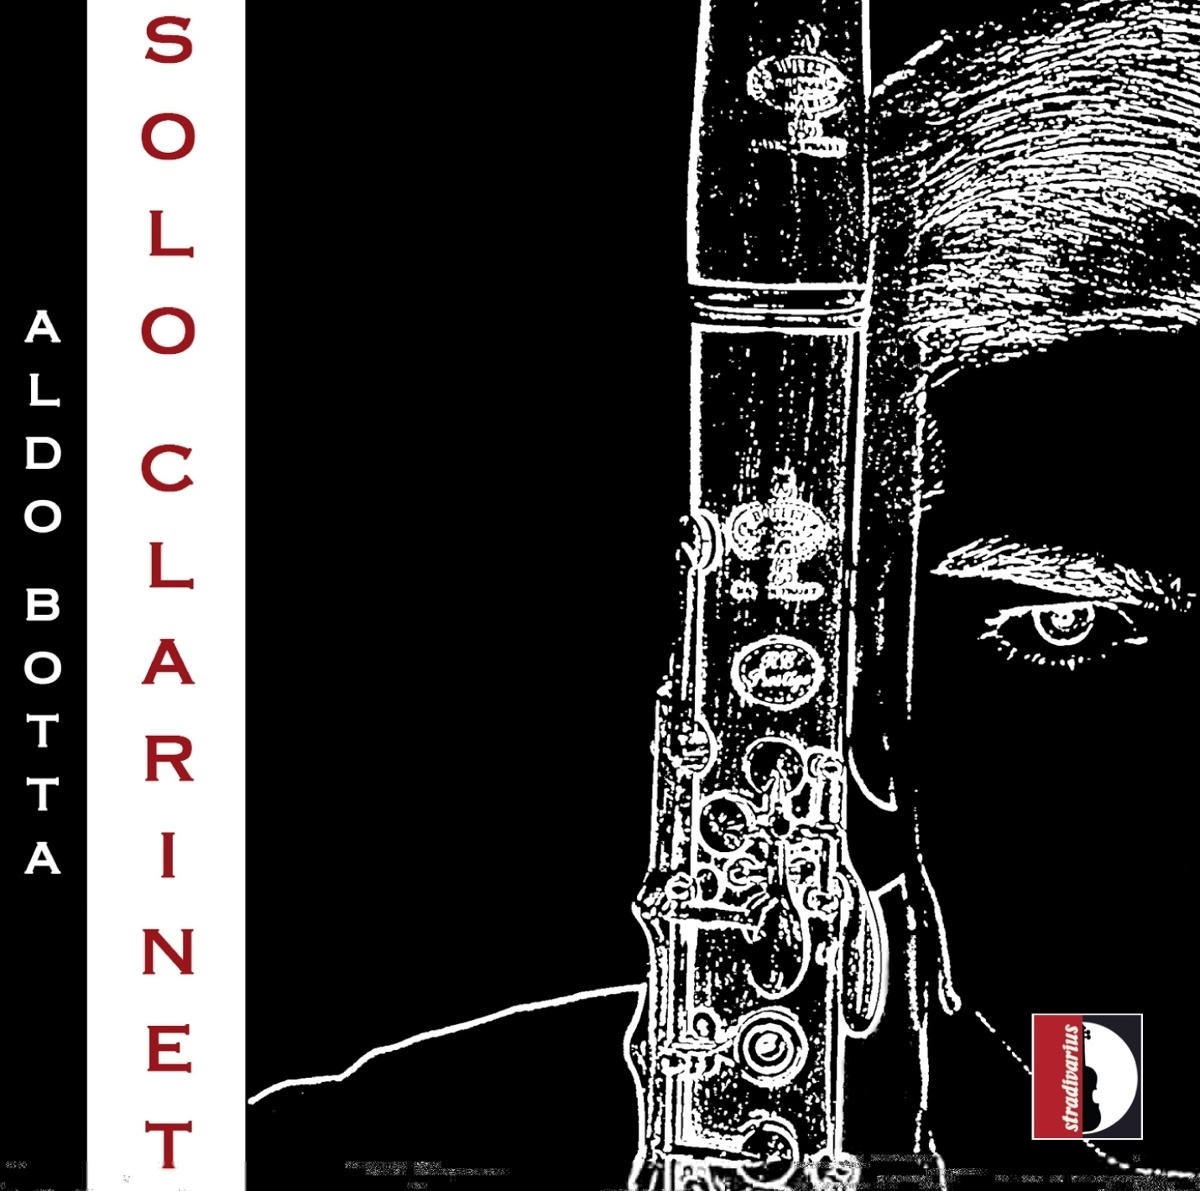 Soloklarinette - Aldo Botta. (CD)